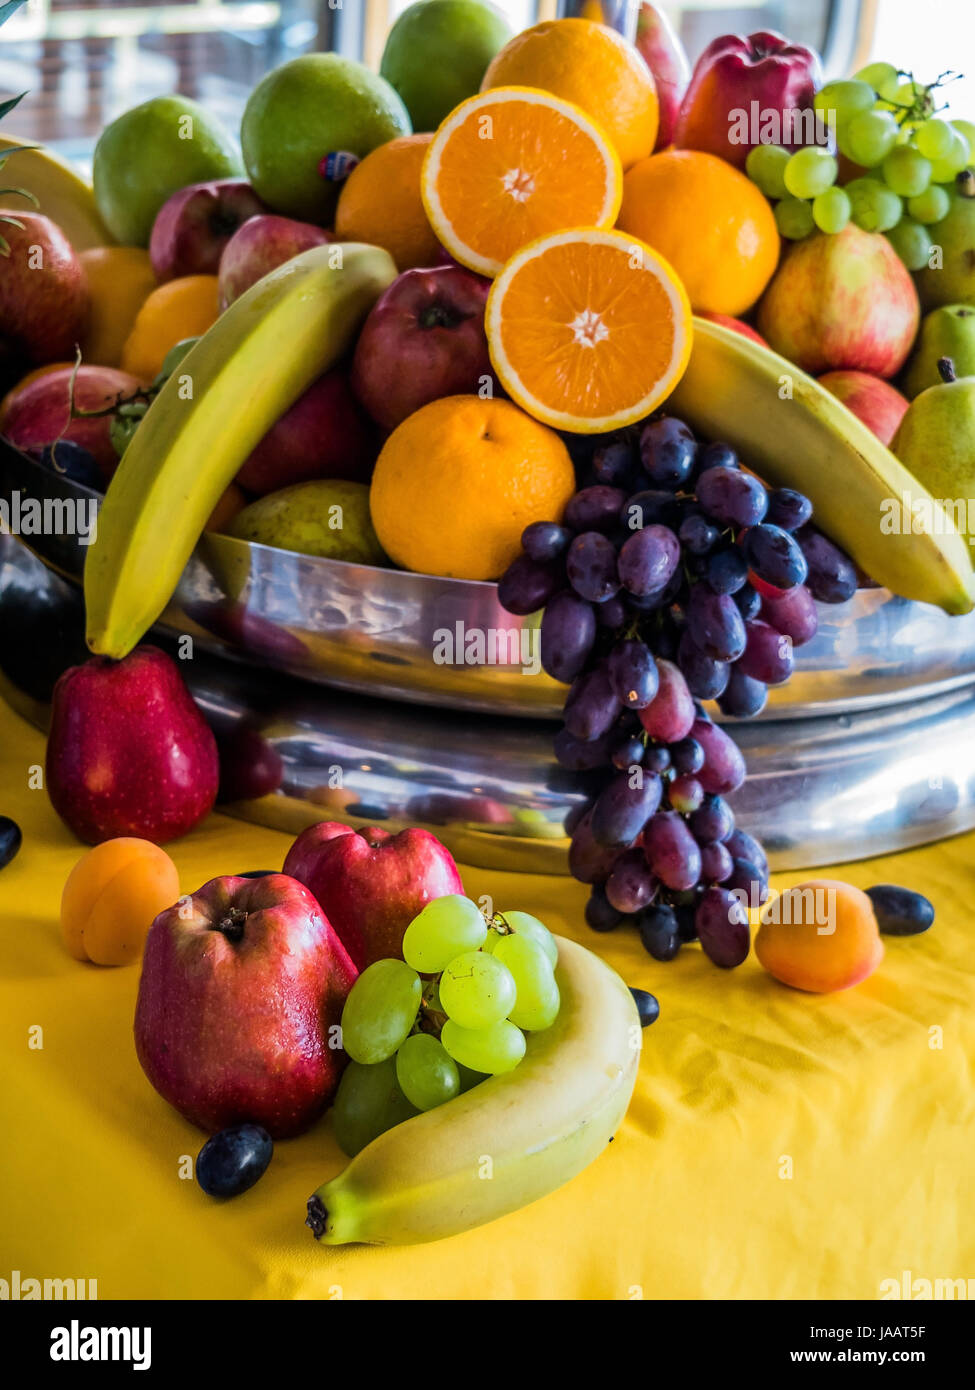 Panier avec des fruits et légumes frais, Korb mit frischem Obst und Gemüse Banque D'Images